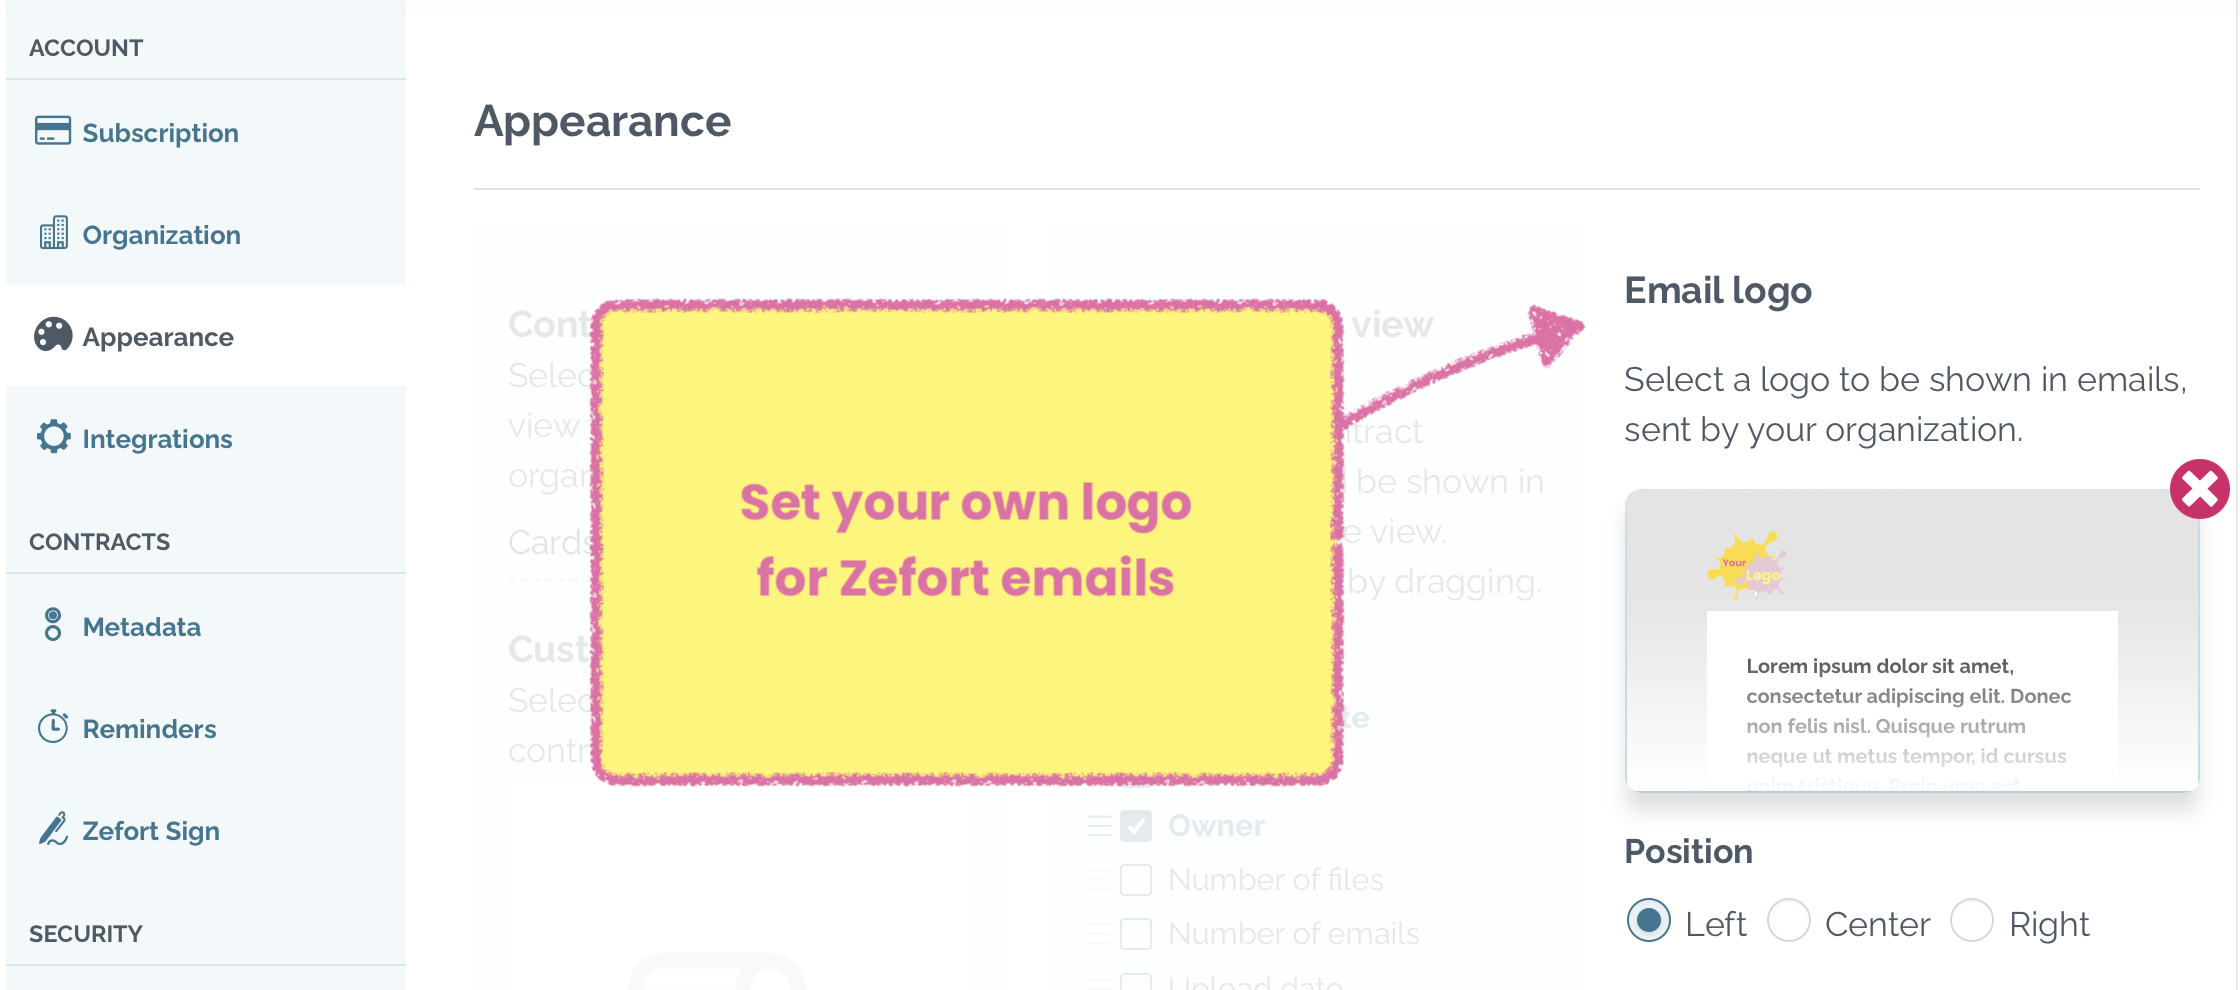 Setup logo for Zefort emails